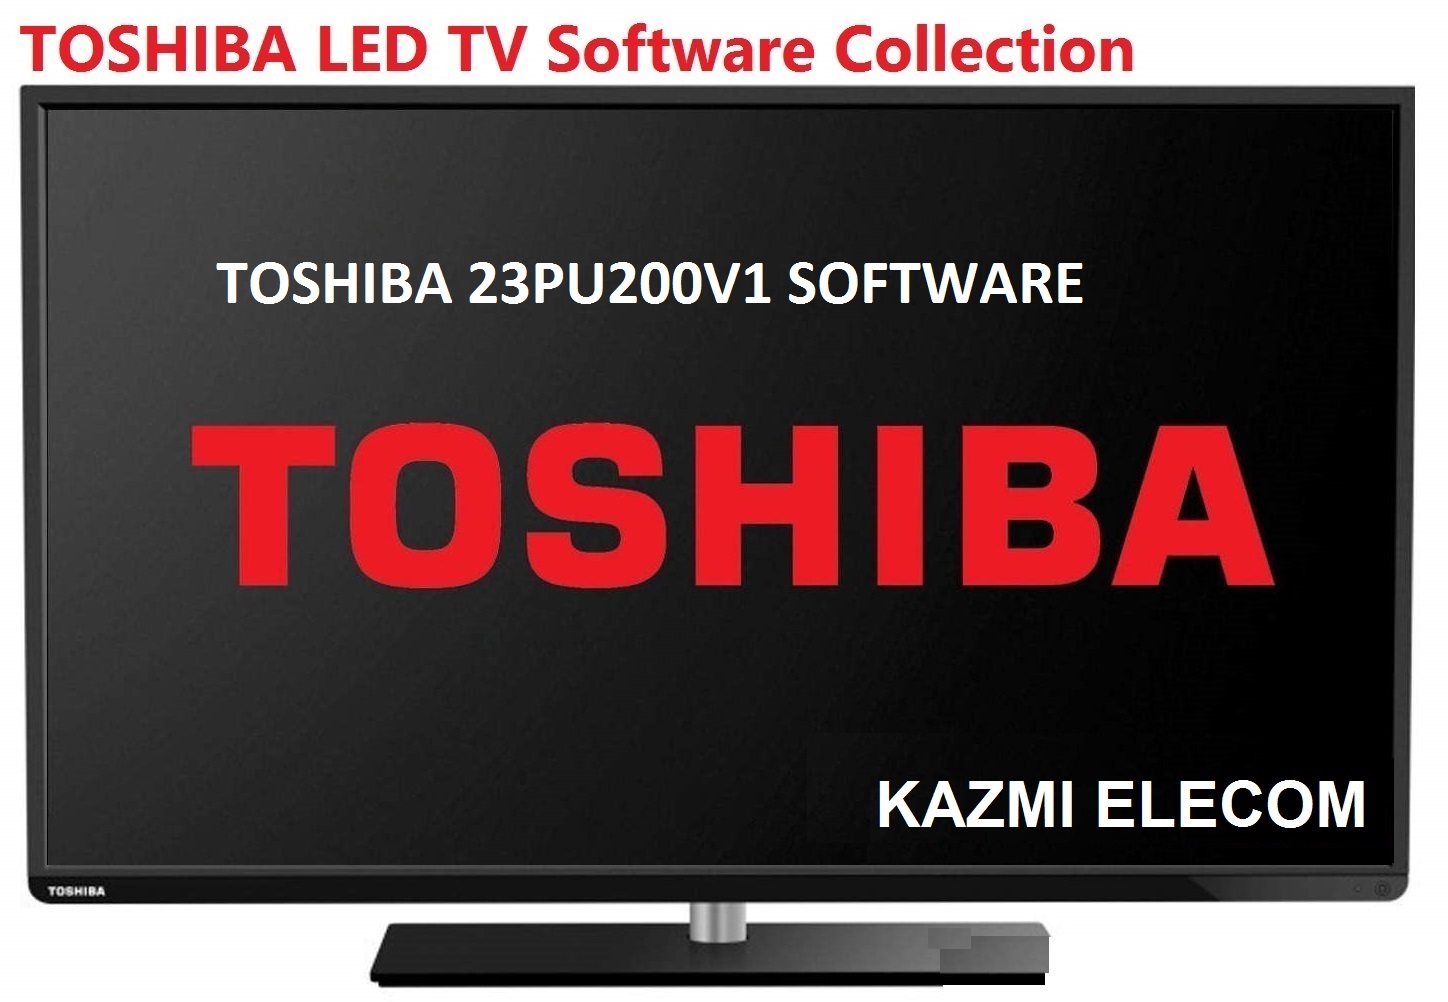 Toshiba 23Pu200V1